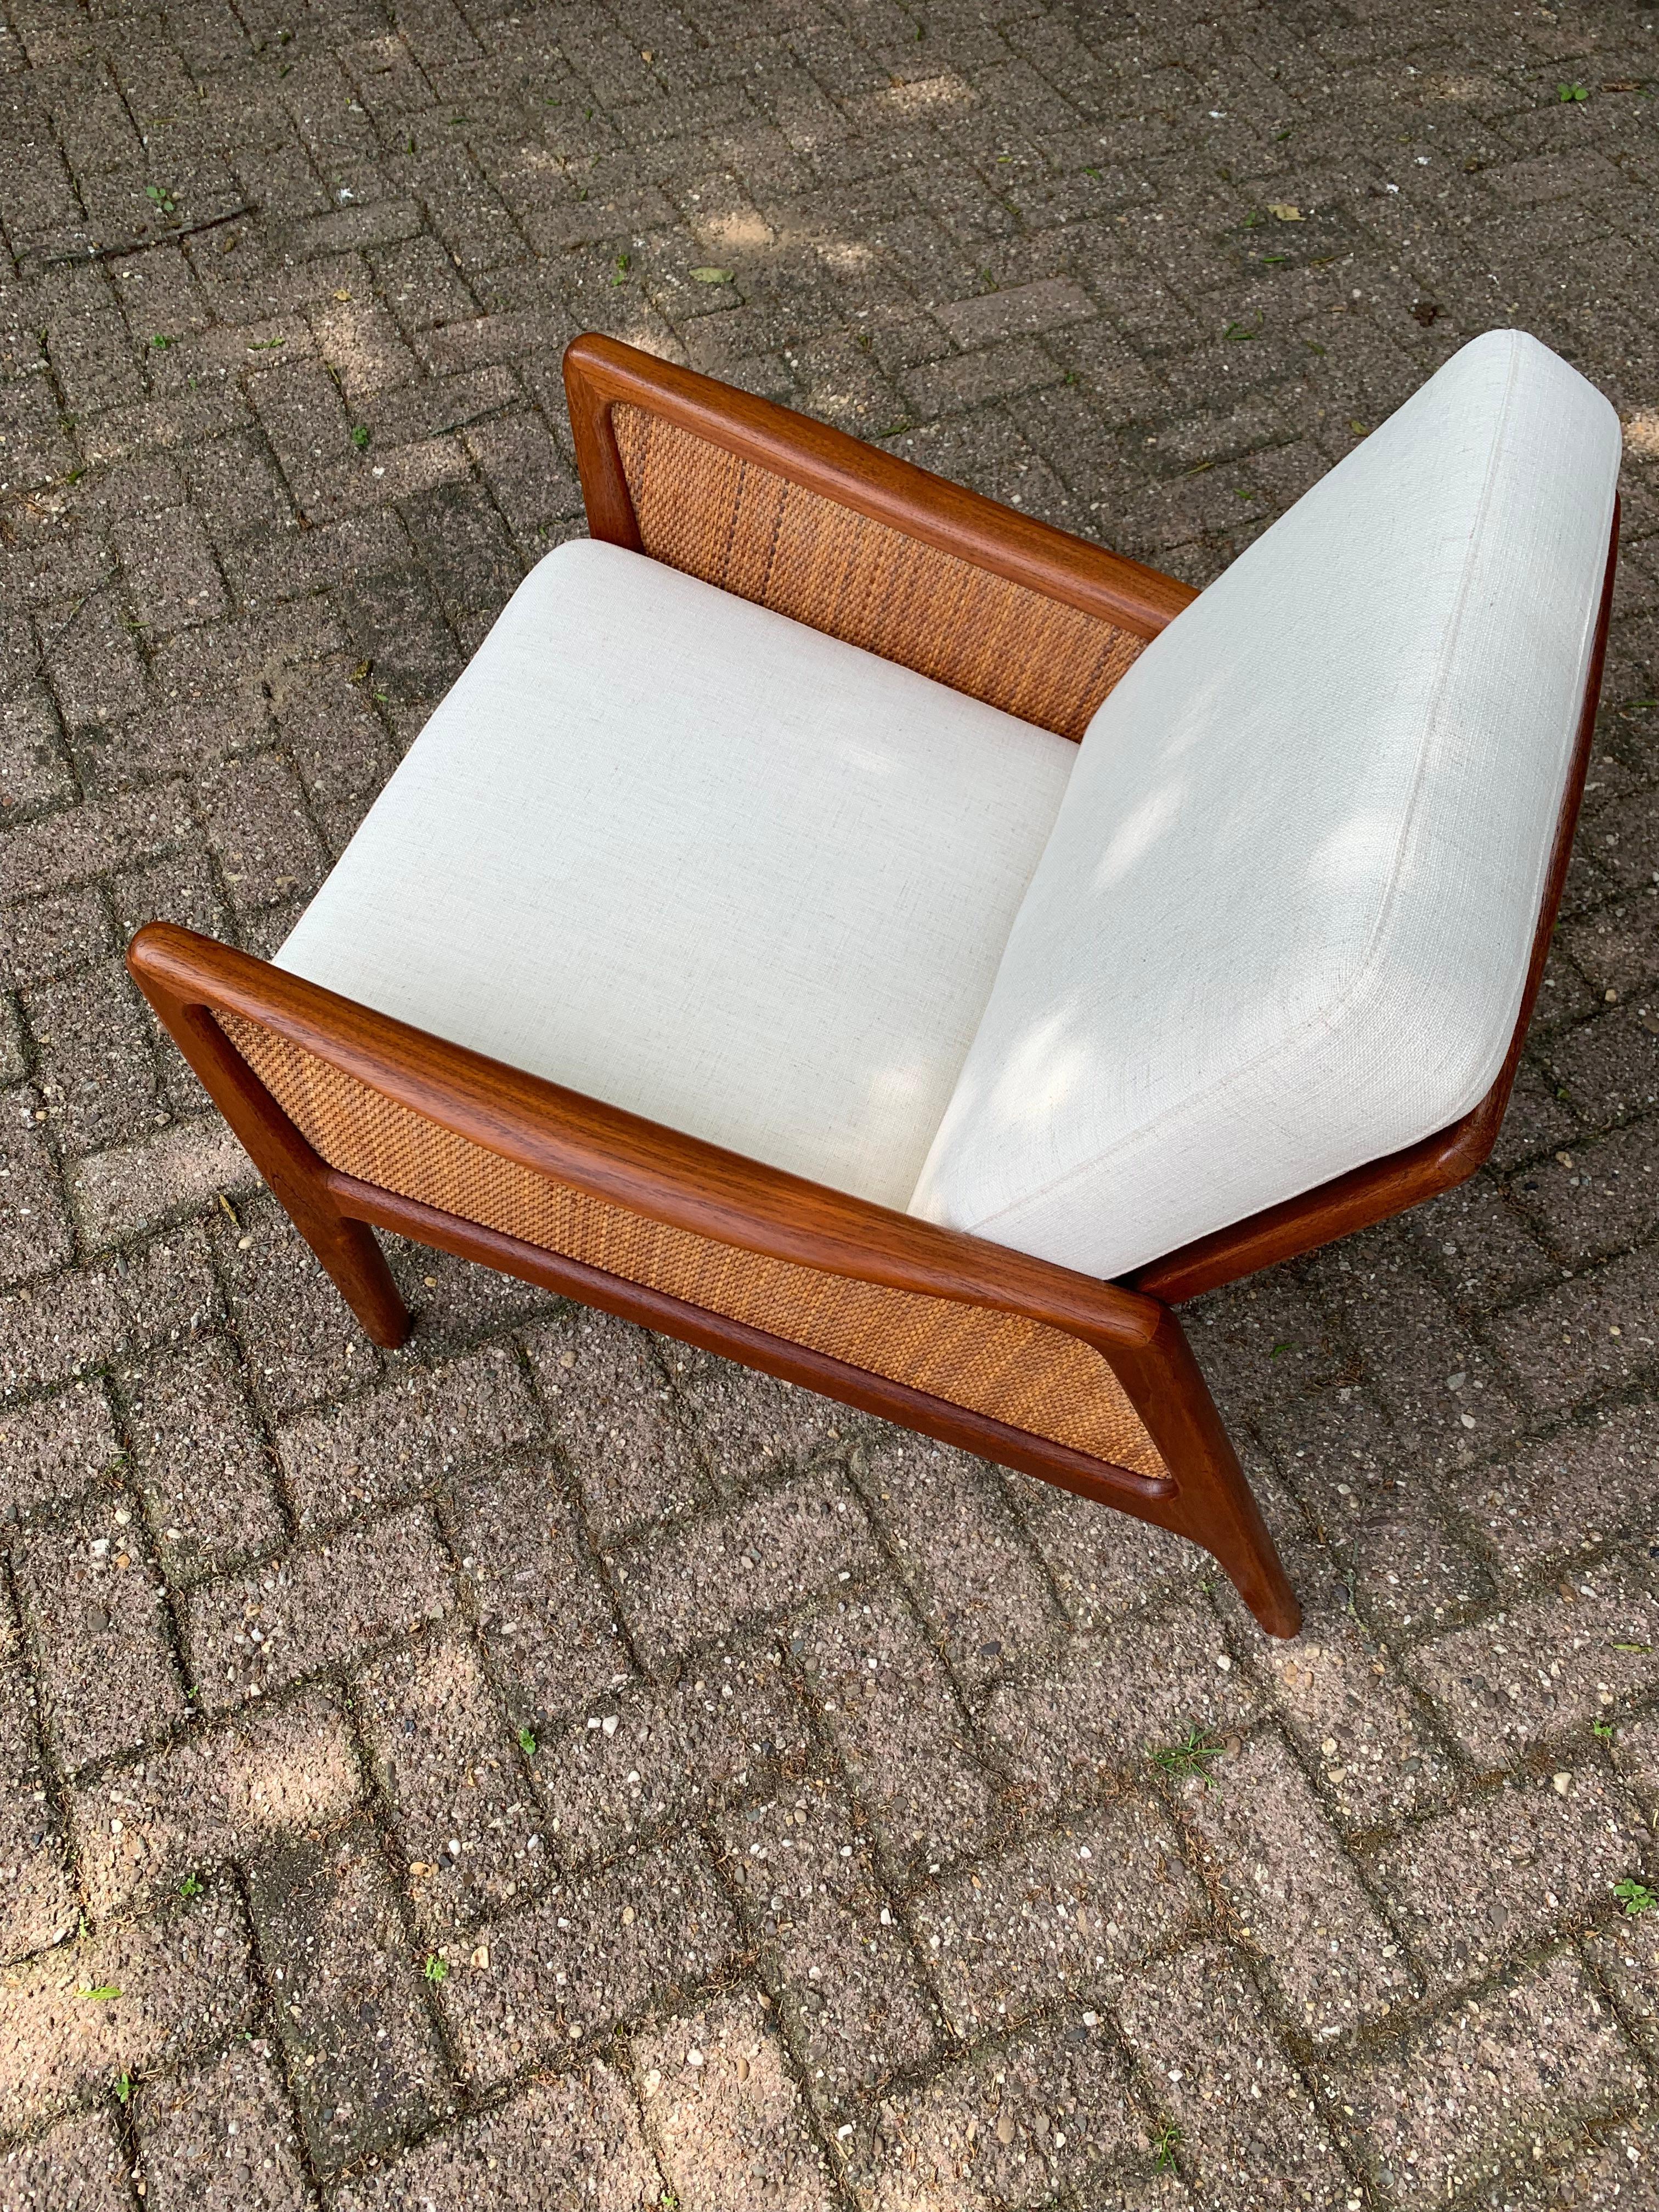 Hand-Woven Cane & Teak Lounge Chair Peter Hvidt & Orla Molgaard-Nielsen France & Daverkosen For Sale